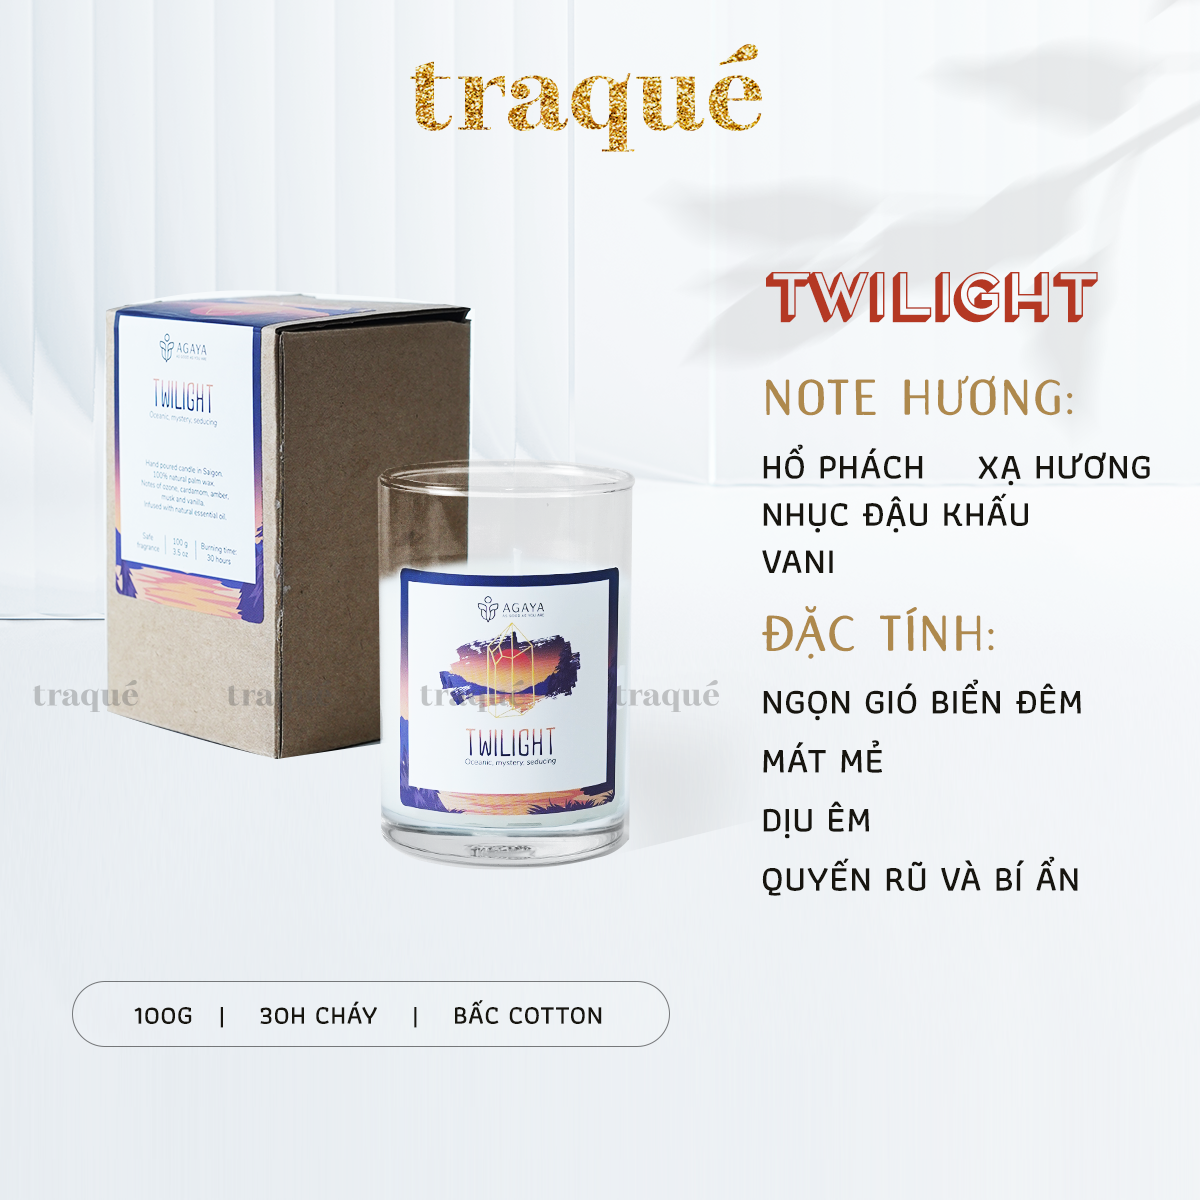 Nến thơm tinh dầu cao cấp không khói an toàn Candle Cup - TWILIGHT/CHẠNG VẠNG - S - 100G (KG NẮP)